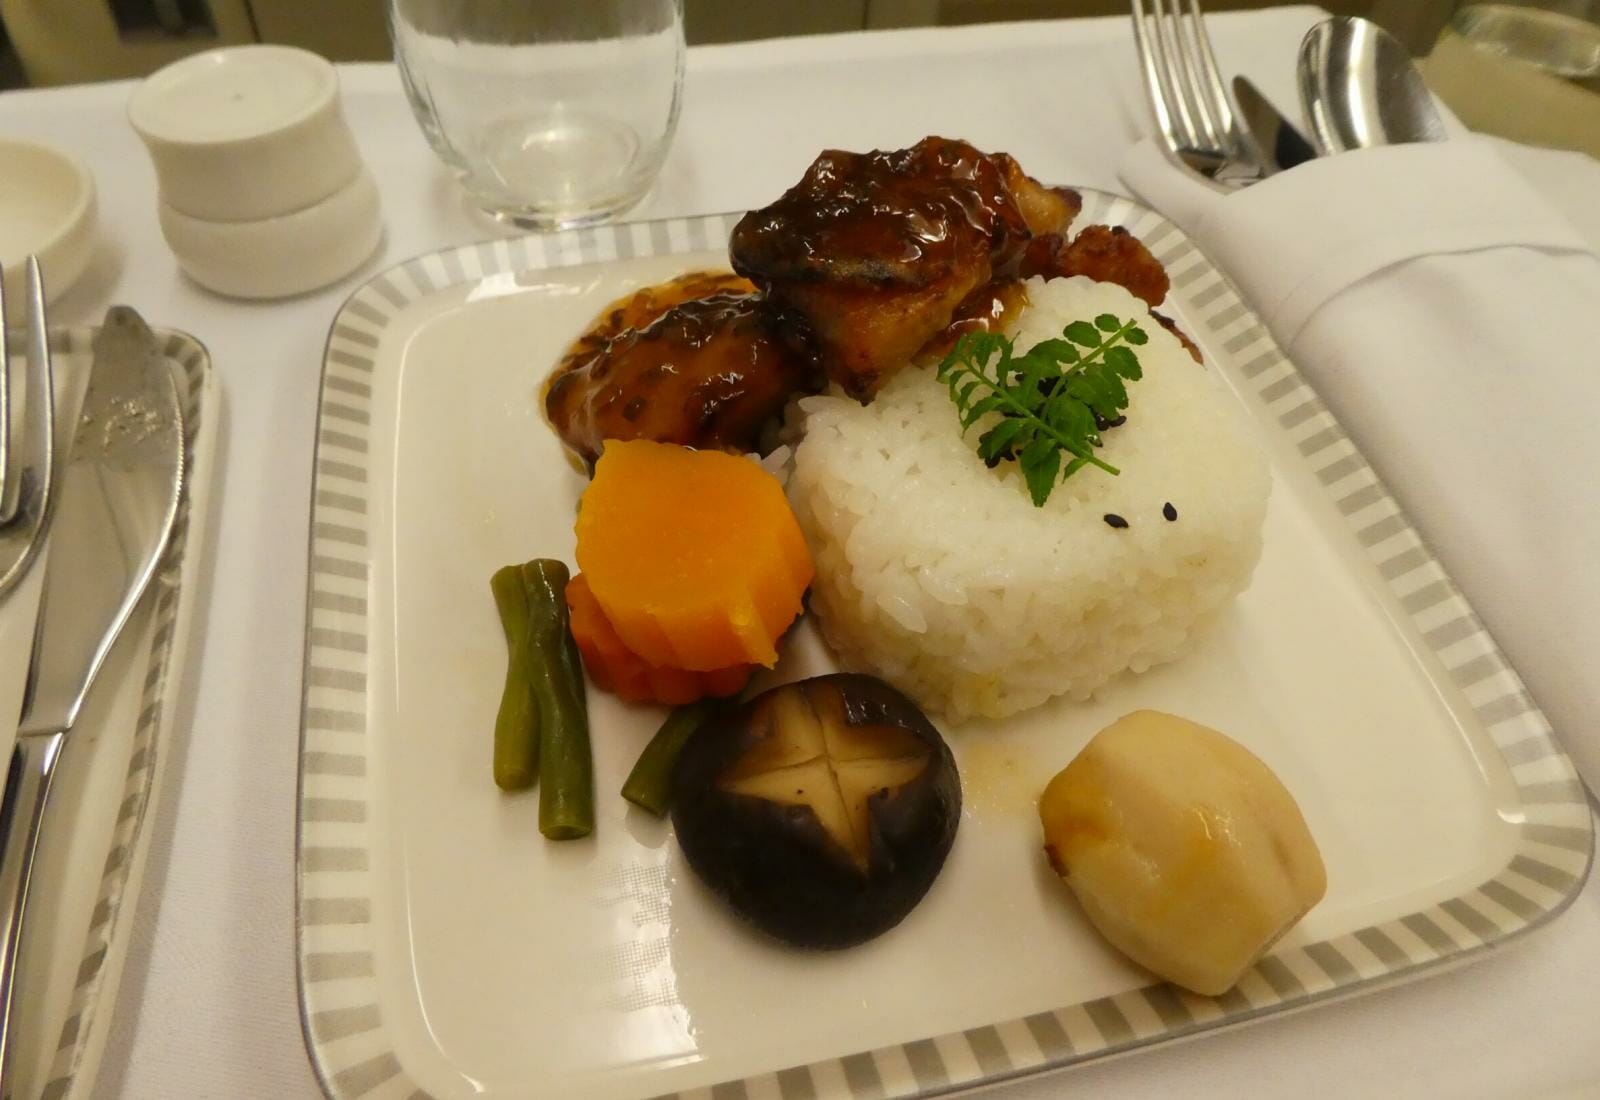 シンガポール航空-ビジネスクラス機内食